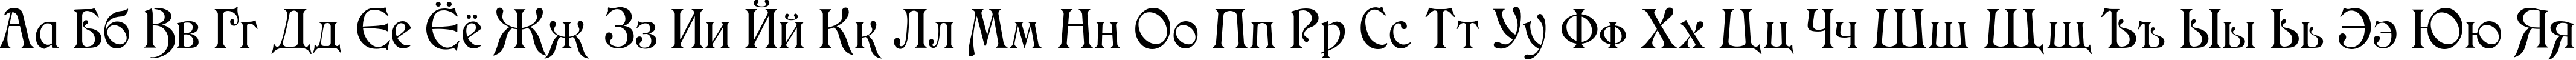 Пример написания русского алфавита шрифтом Medieval